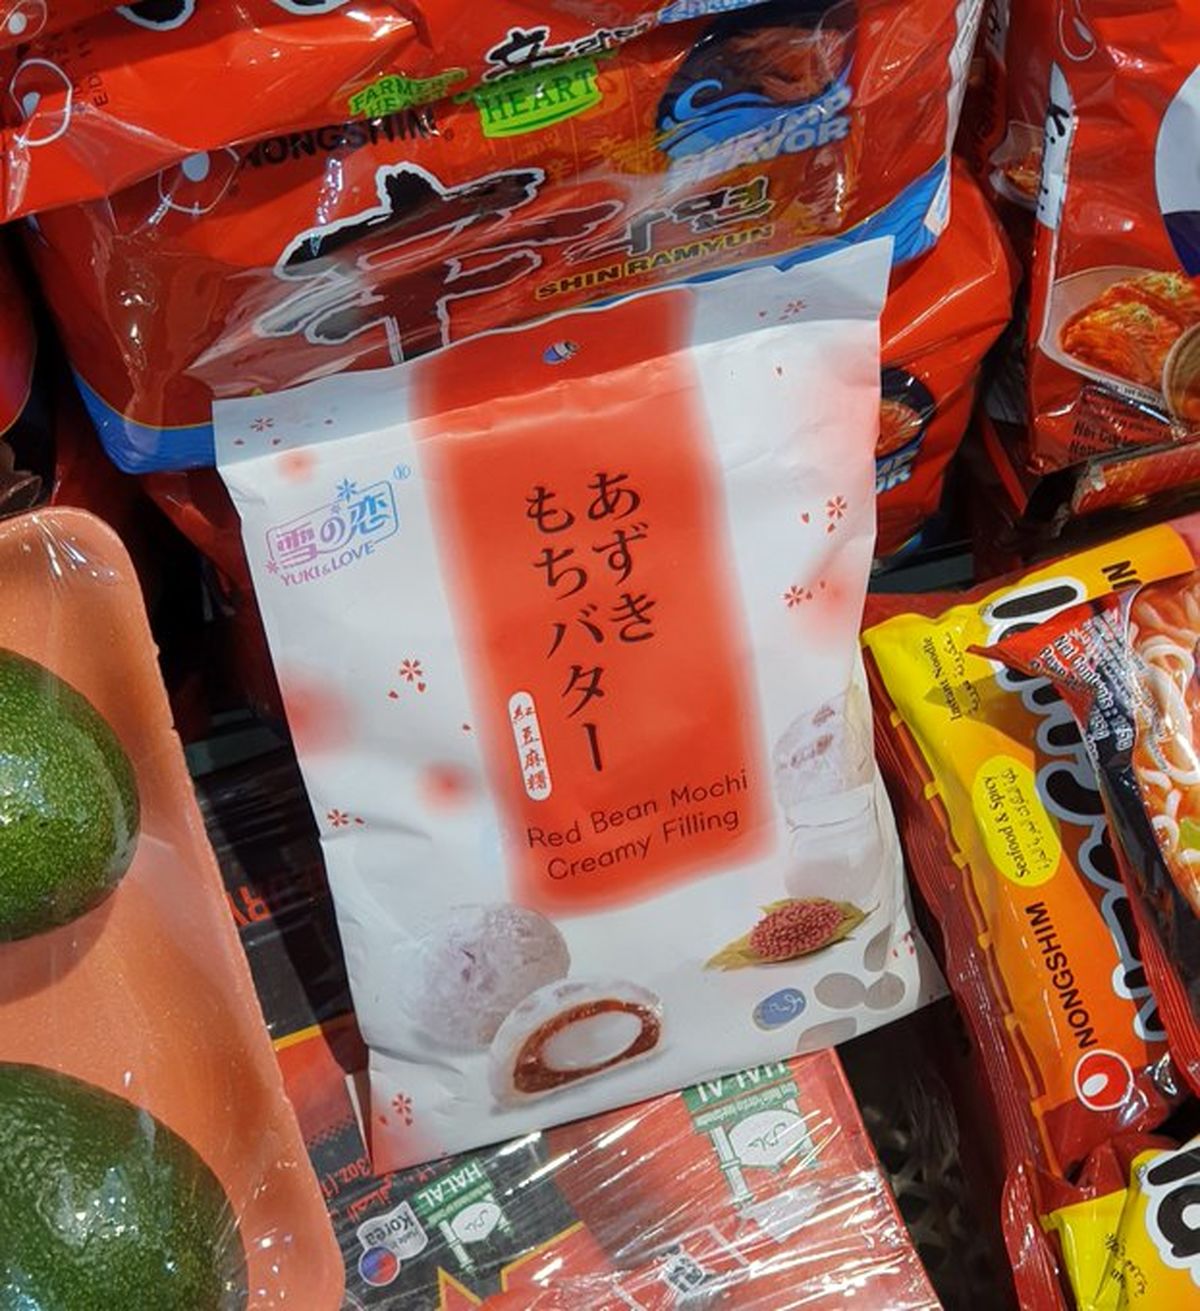 شیرینی مرگبار ژاپنی در بازار بهجت آباد! +عکس